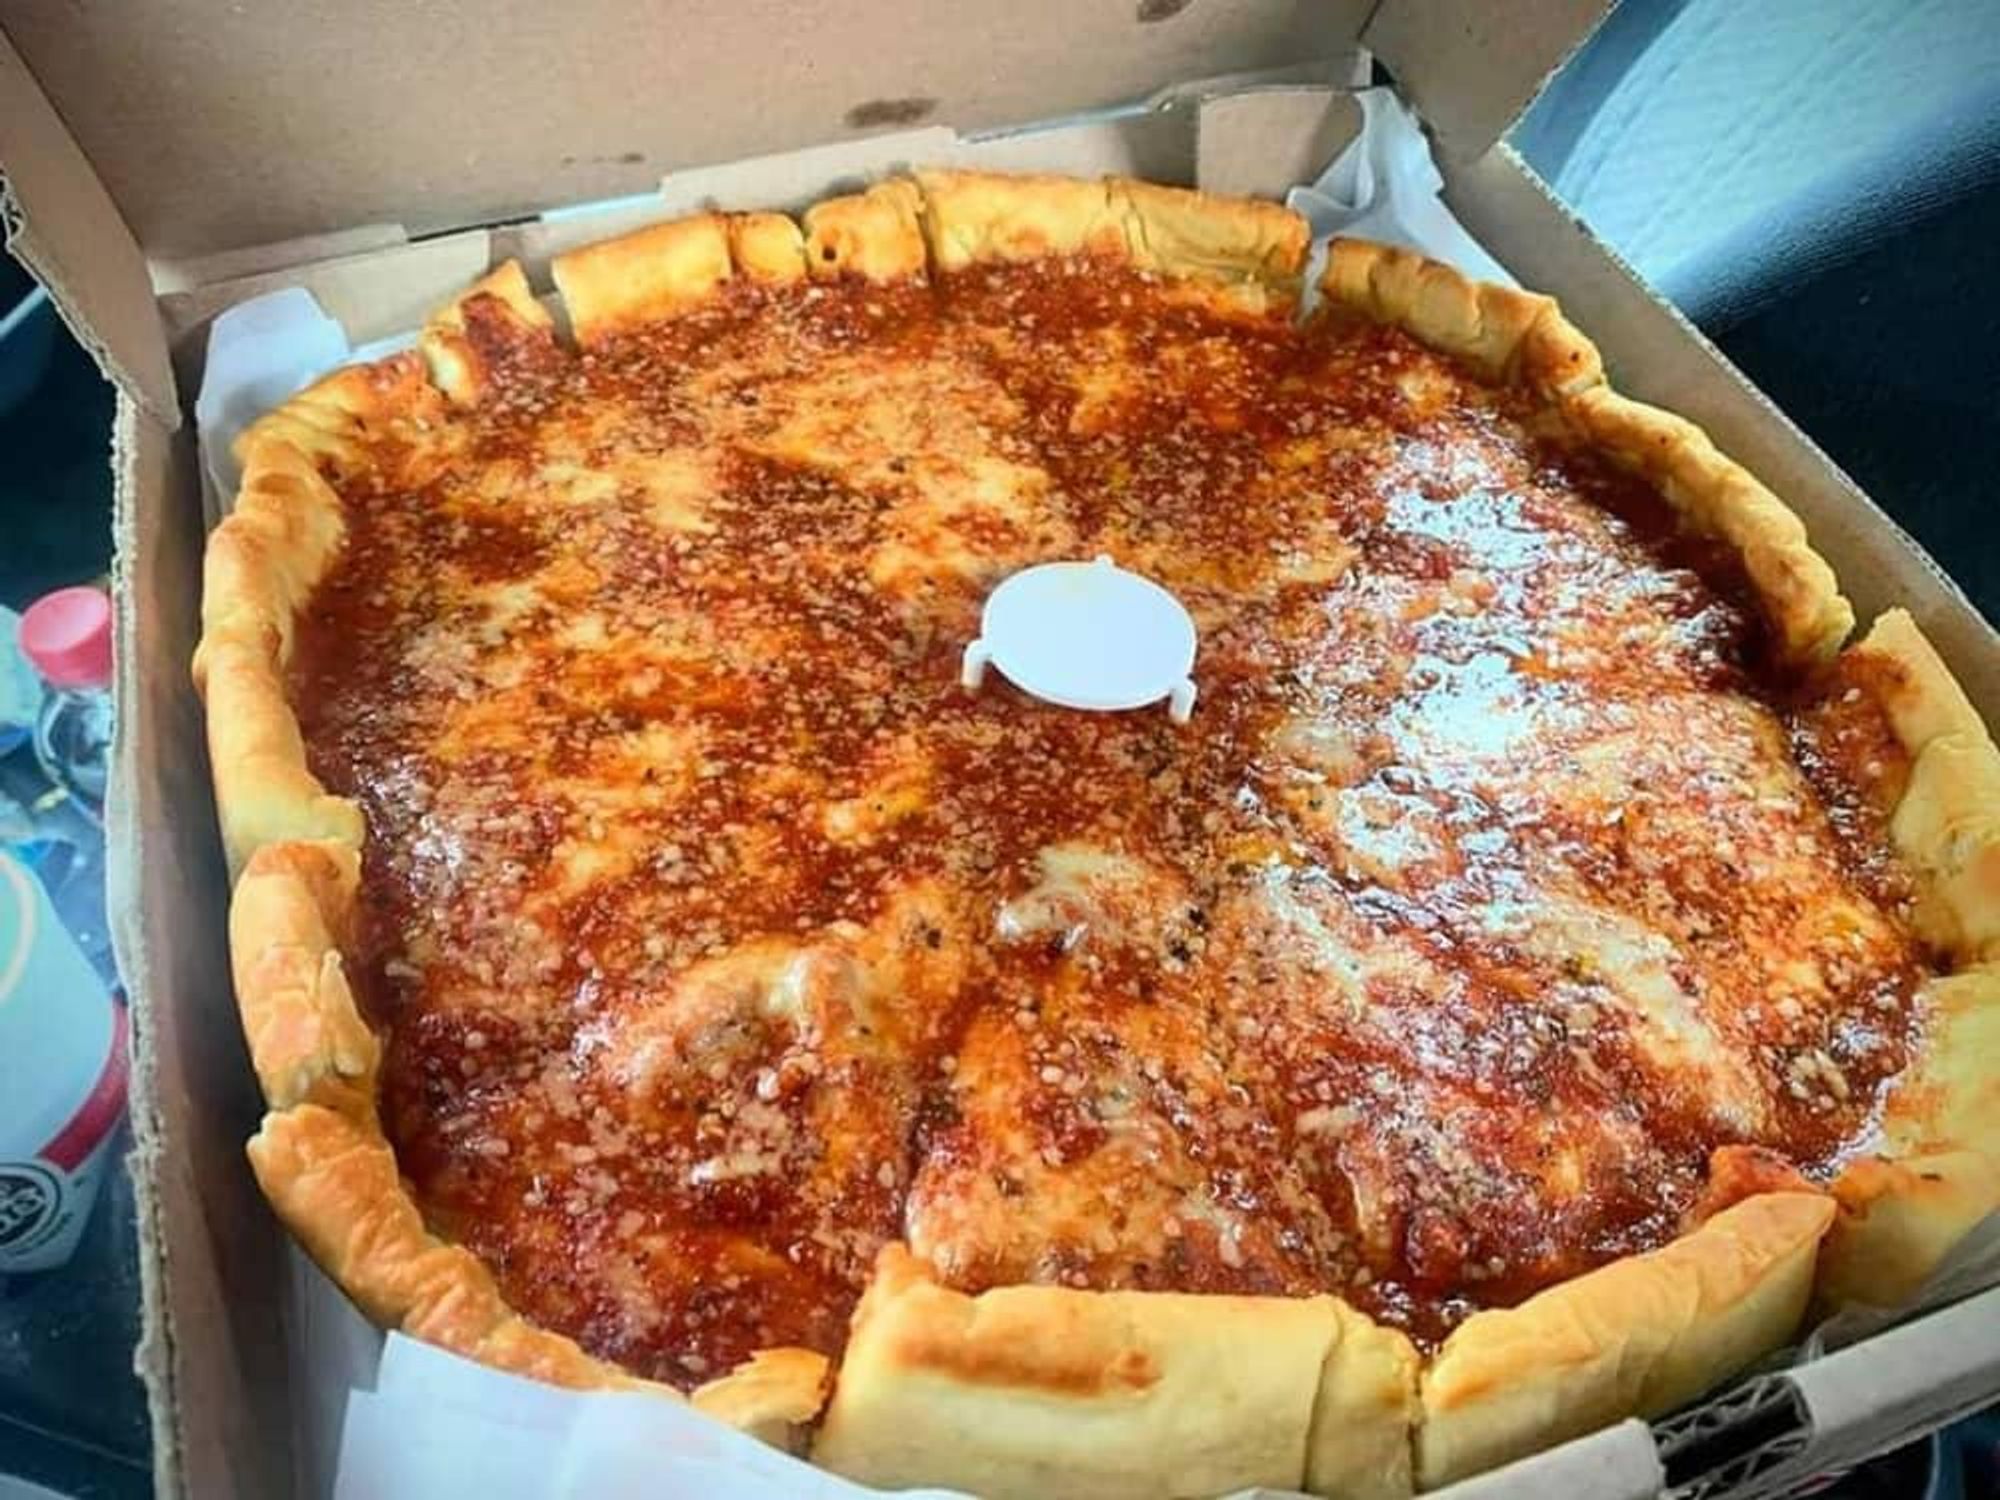 Chicago's Original pizza